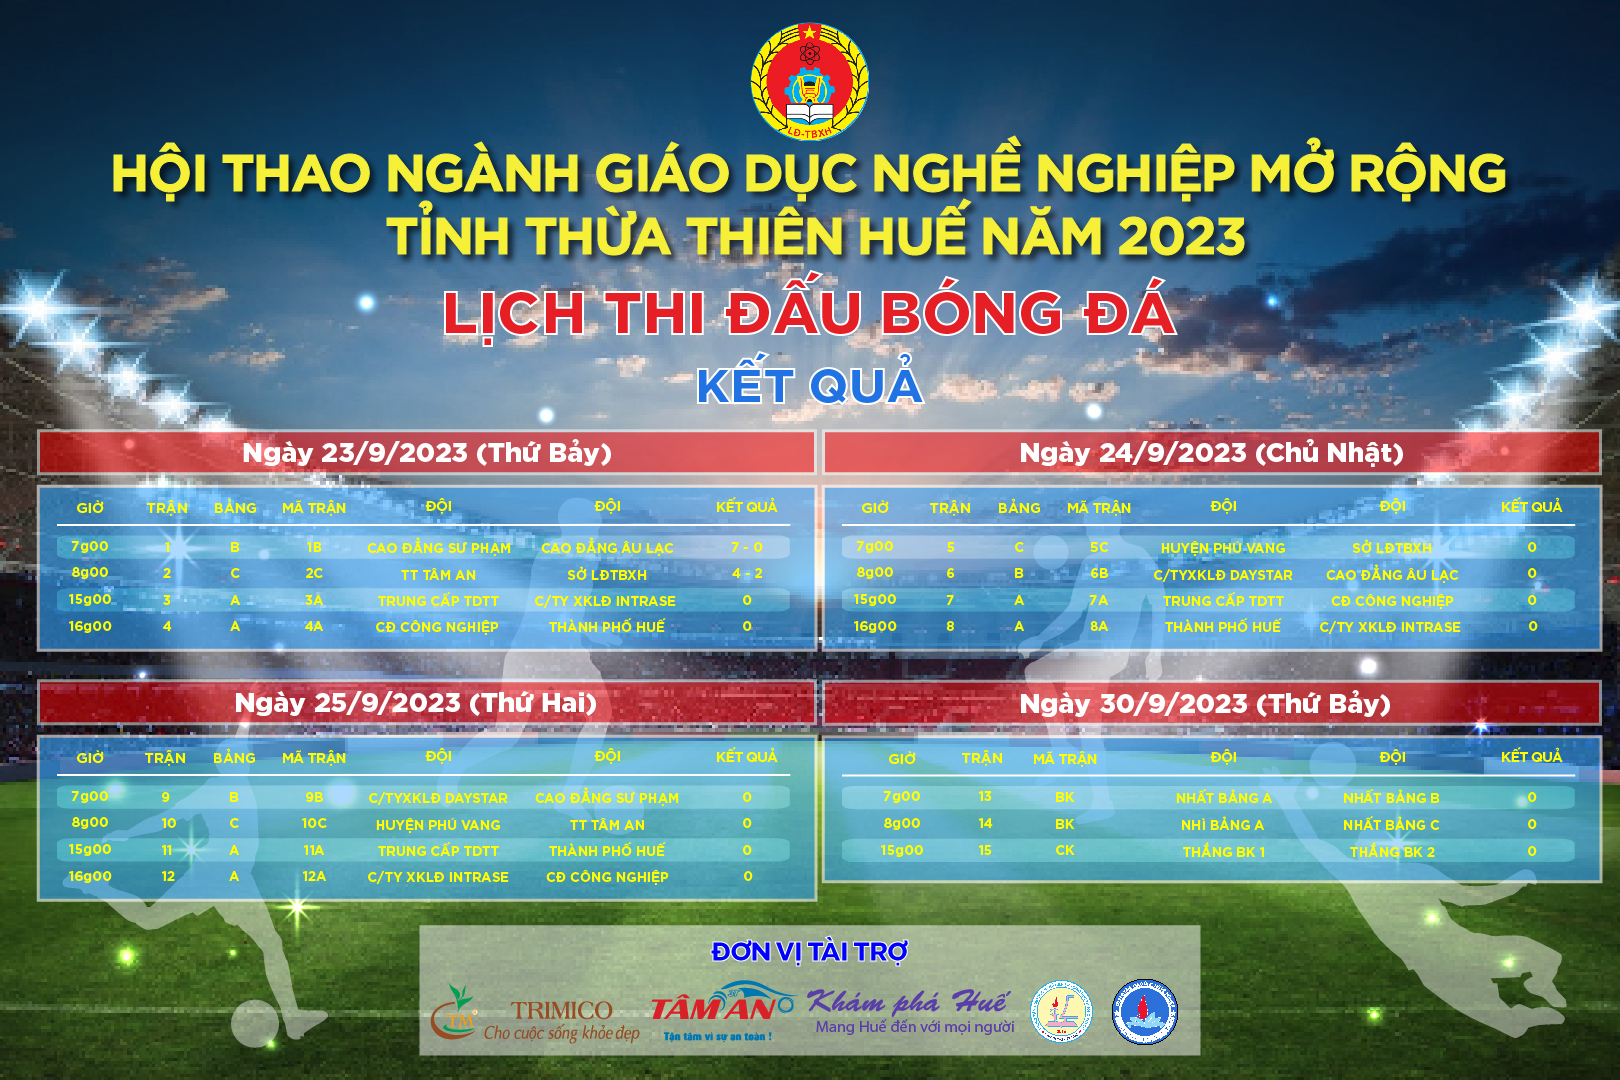 Hội thao ngành Giáo dục nghề nghiệp mở rộng tỉnh Thừa Thiên Huế năm 2023.